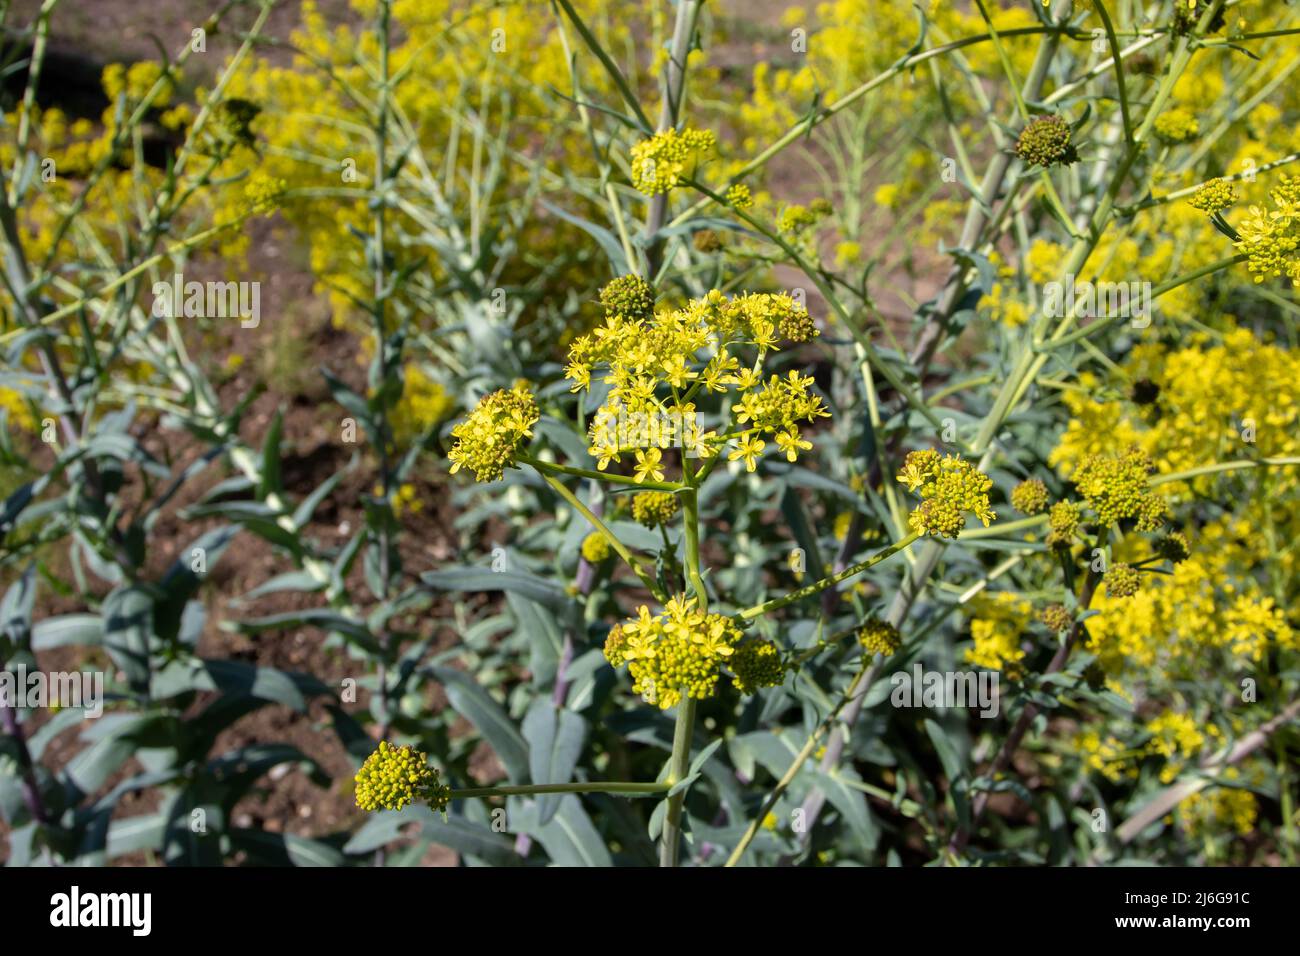 Isatis tinctoria, Waid, Färberwaid oder Glastum blühende Pflanze mit leuchtend gelben Blüten im Frühjahr. Indigo-blauer Farbstoff. Stockfoto